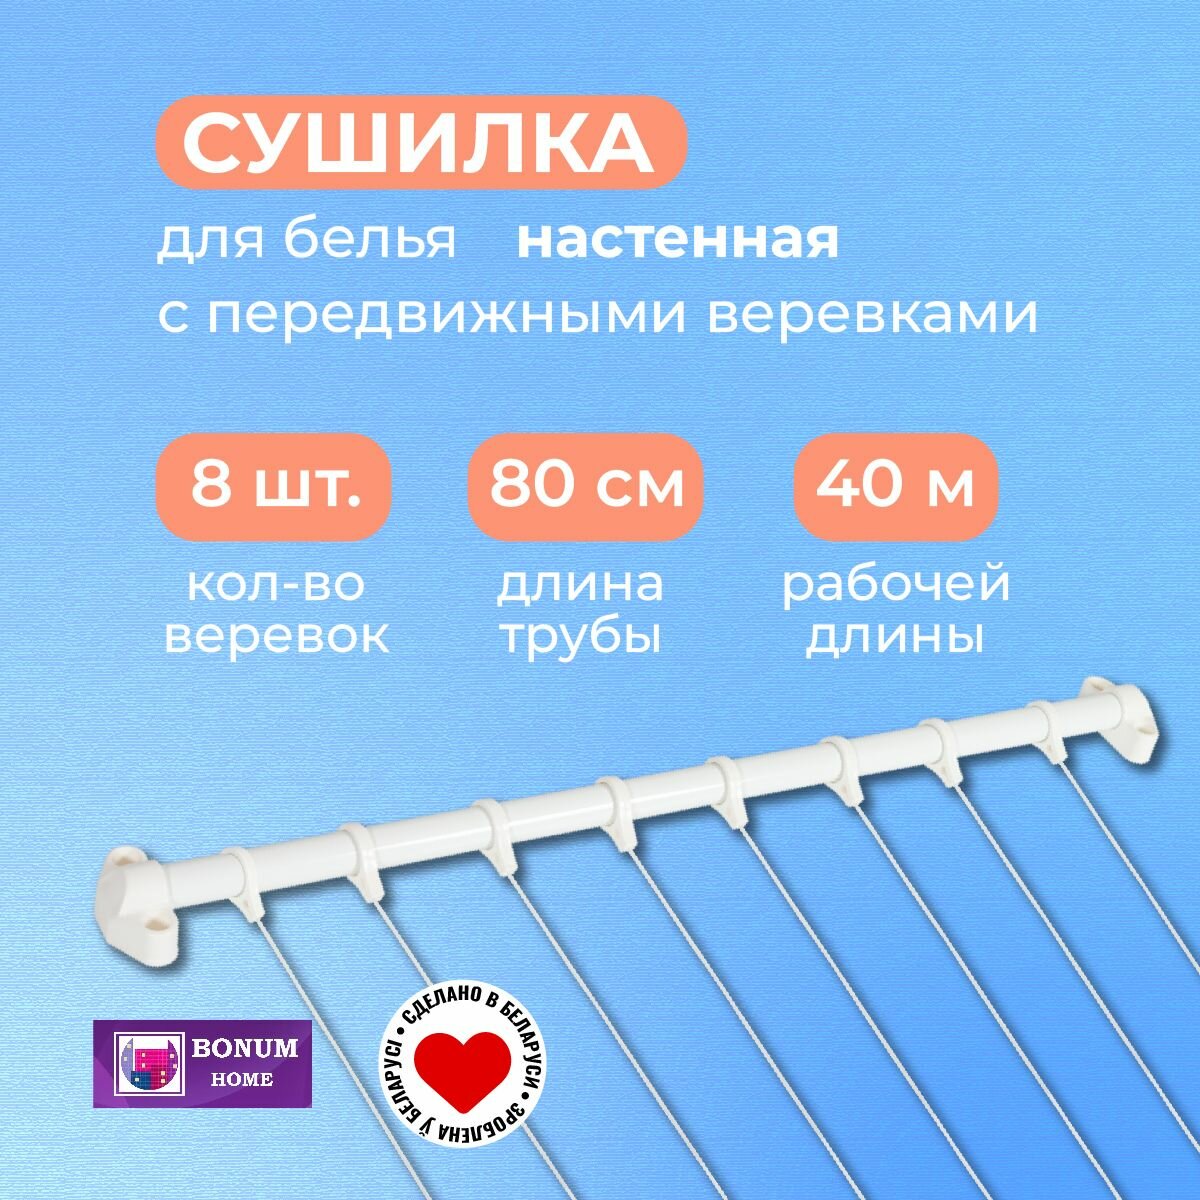 Сушилка для белья с 8 передвижными веревками, белая. Беларусь.